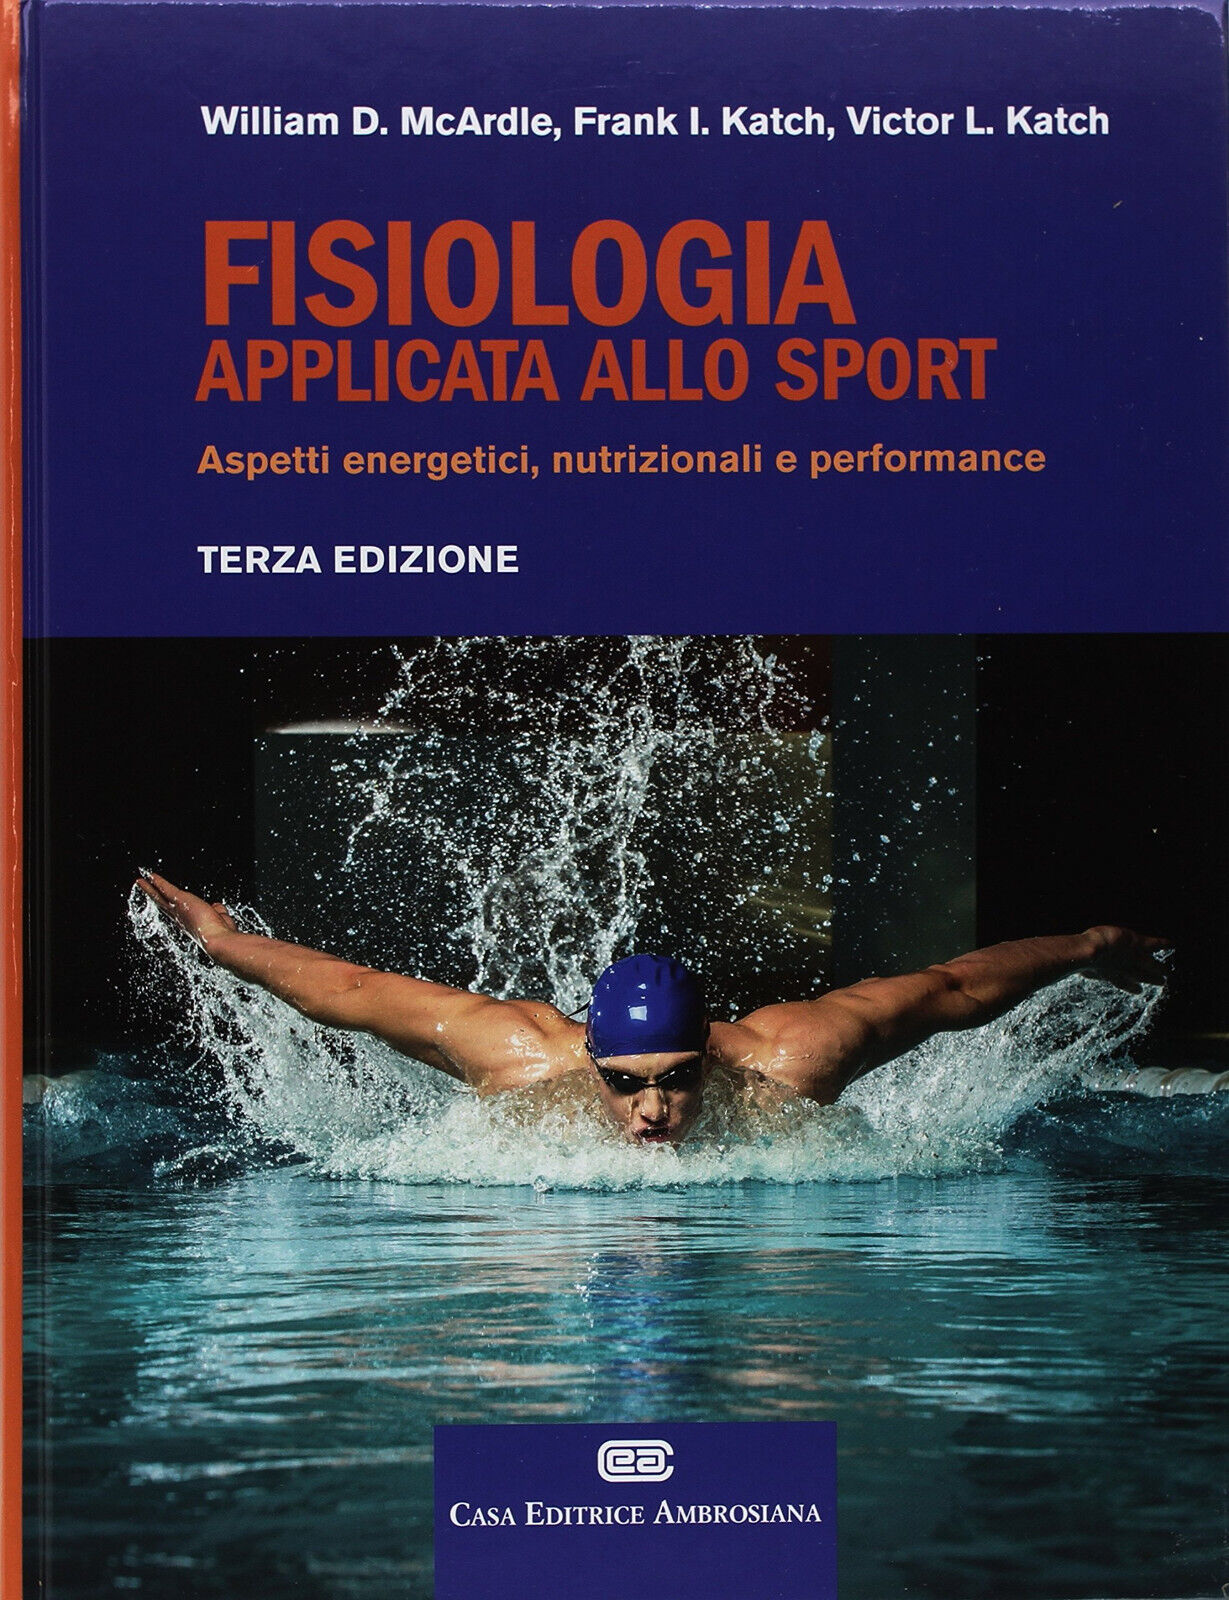 Fisiologia applicata allo sport - William D. McArdle, Frank I. Katch - CEA, 2018 libro usato